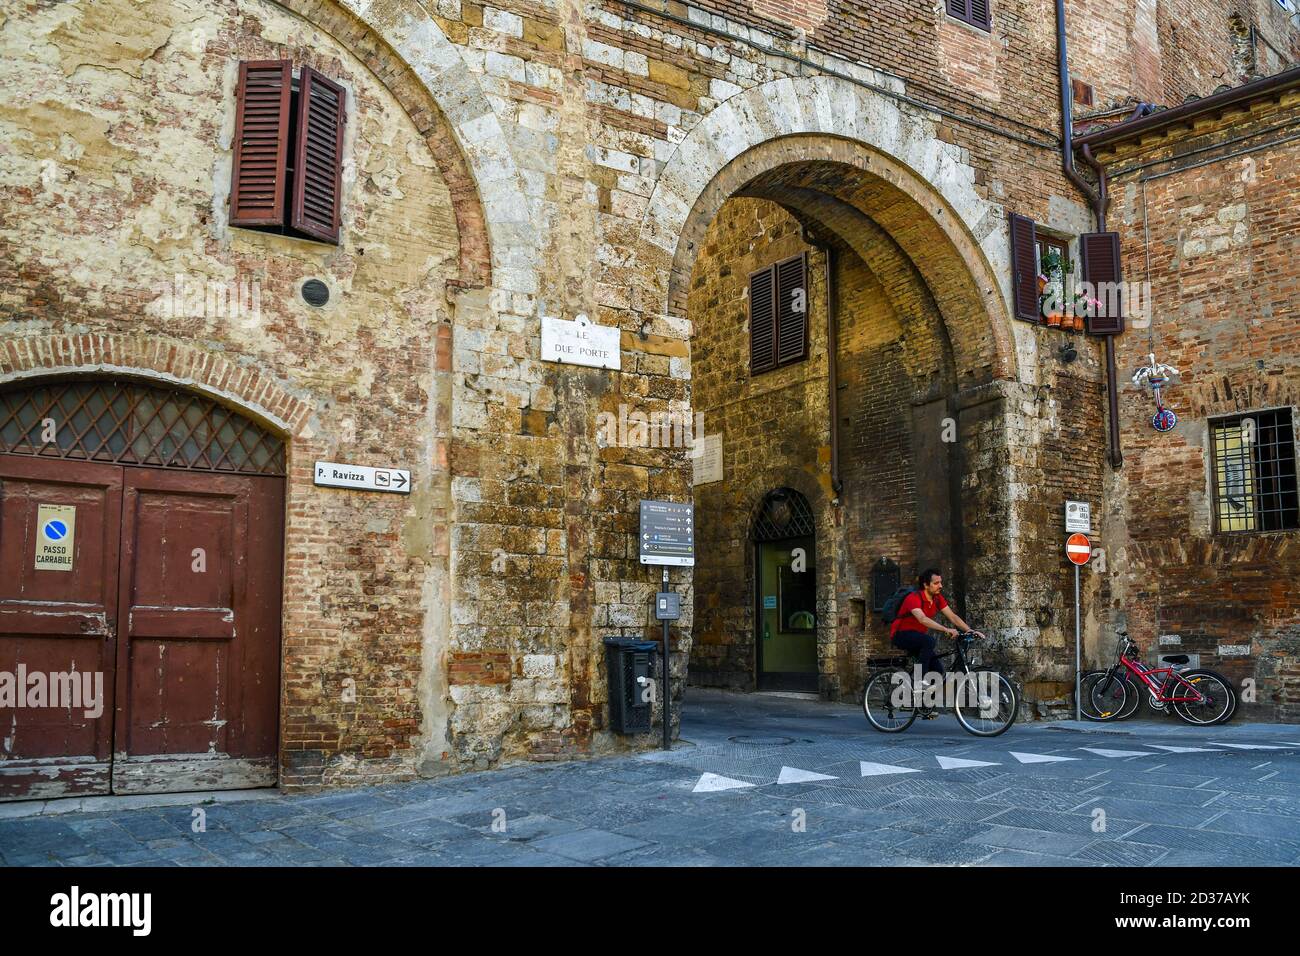 L'Arco delle due porte, porte médiévale du centre historique de Sienne, site classé au patrimoine mondial de l'UNESCO, avec un homme à vélo, Toscane, Italie Banque D'Images